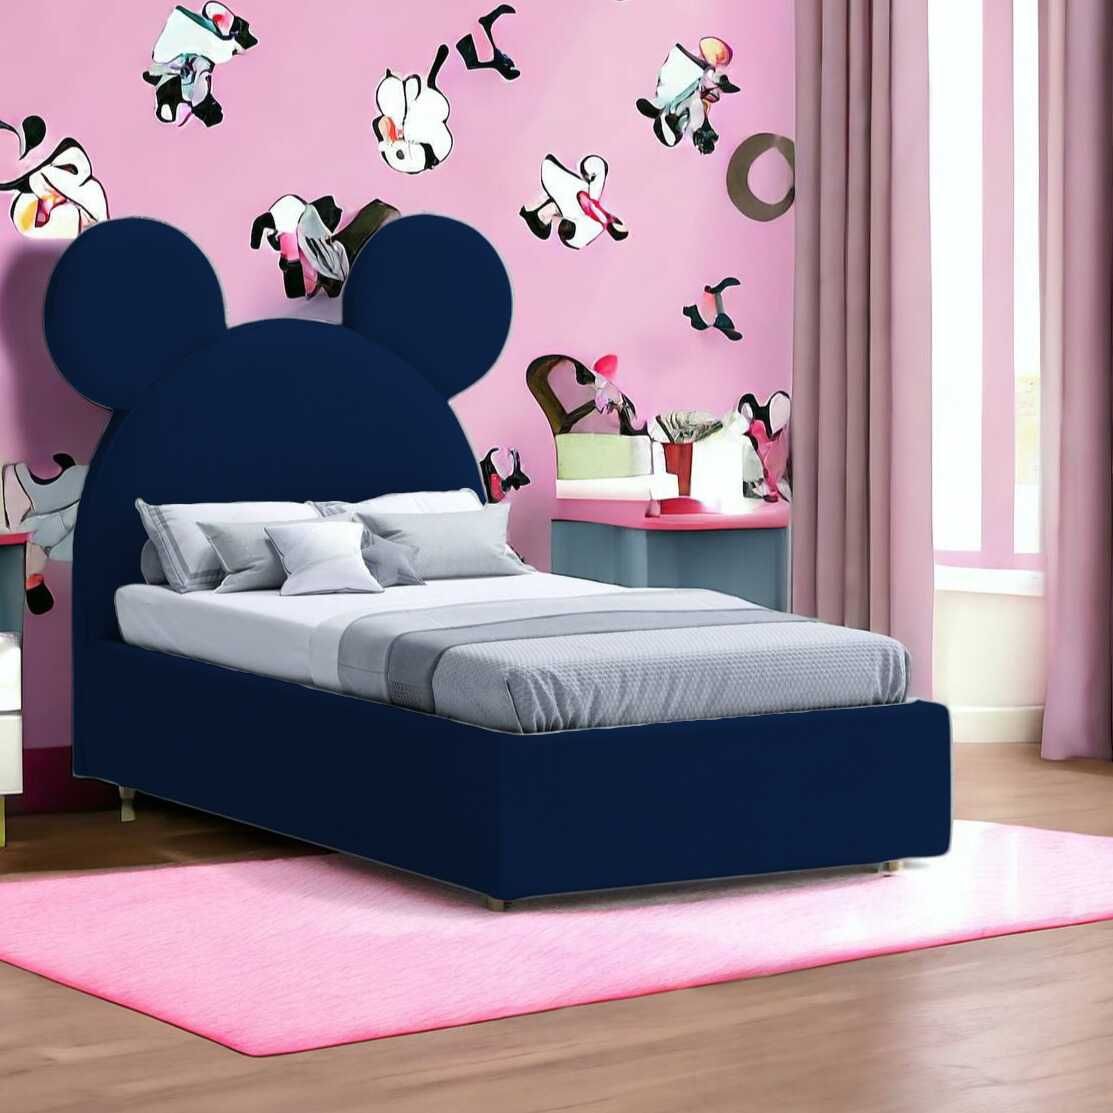 Łóżko Miki to idealne rozwiązanie do pokoju dziecięcego.Transport